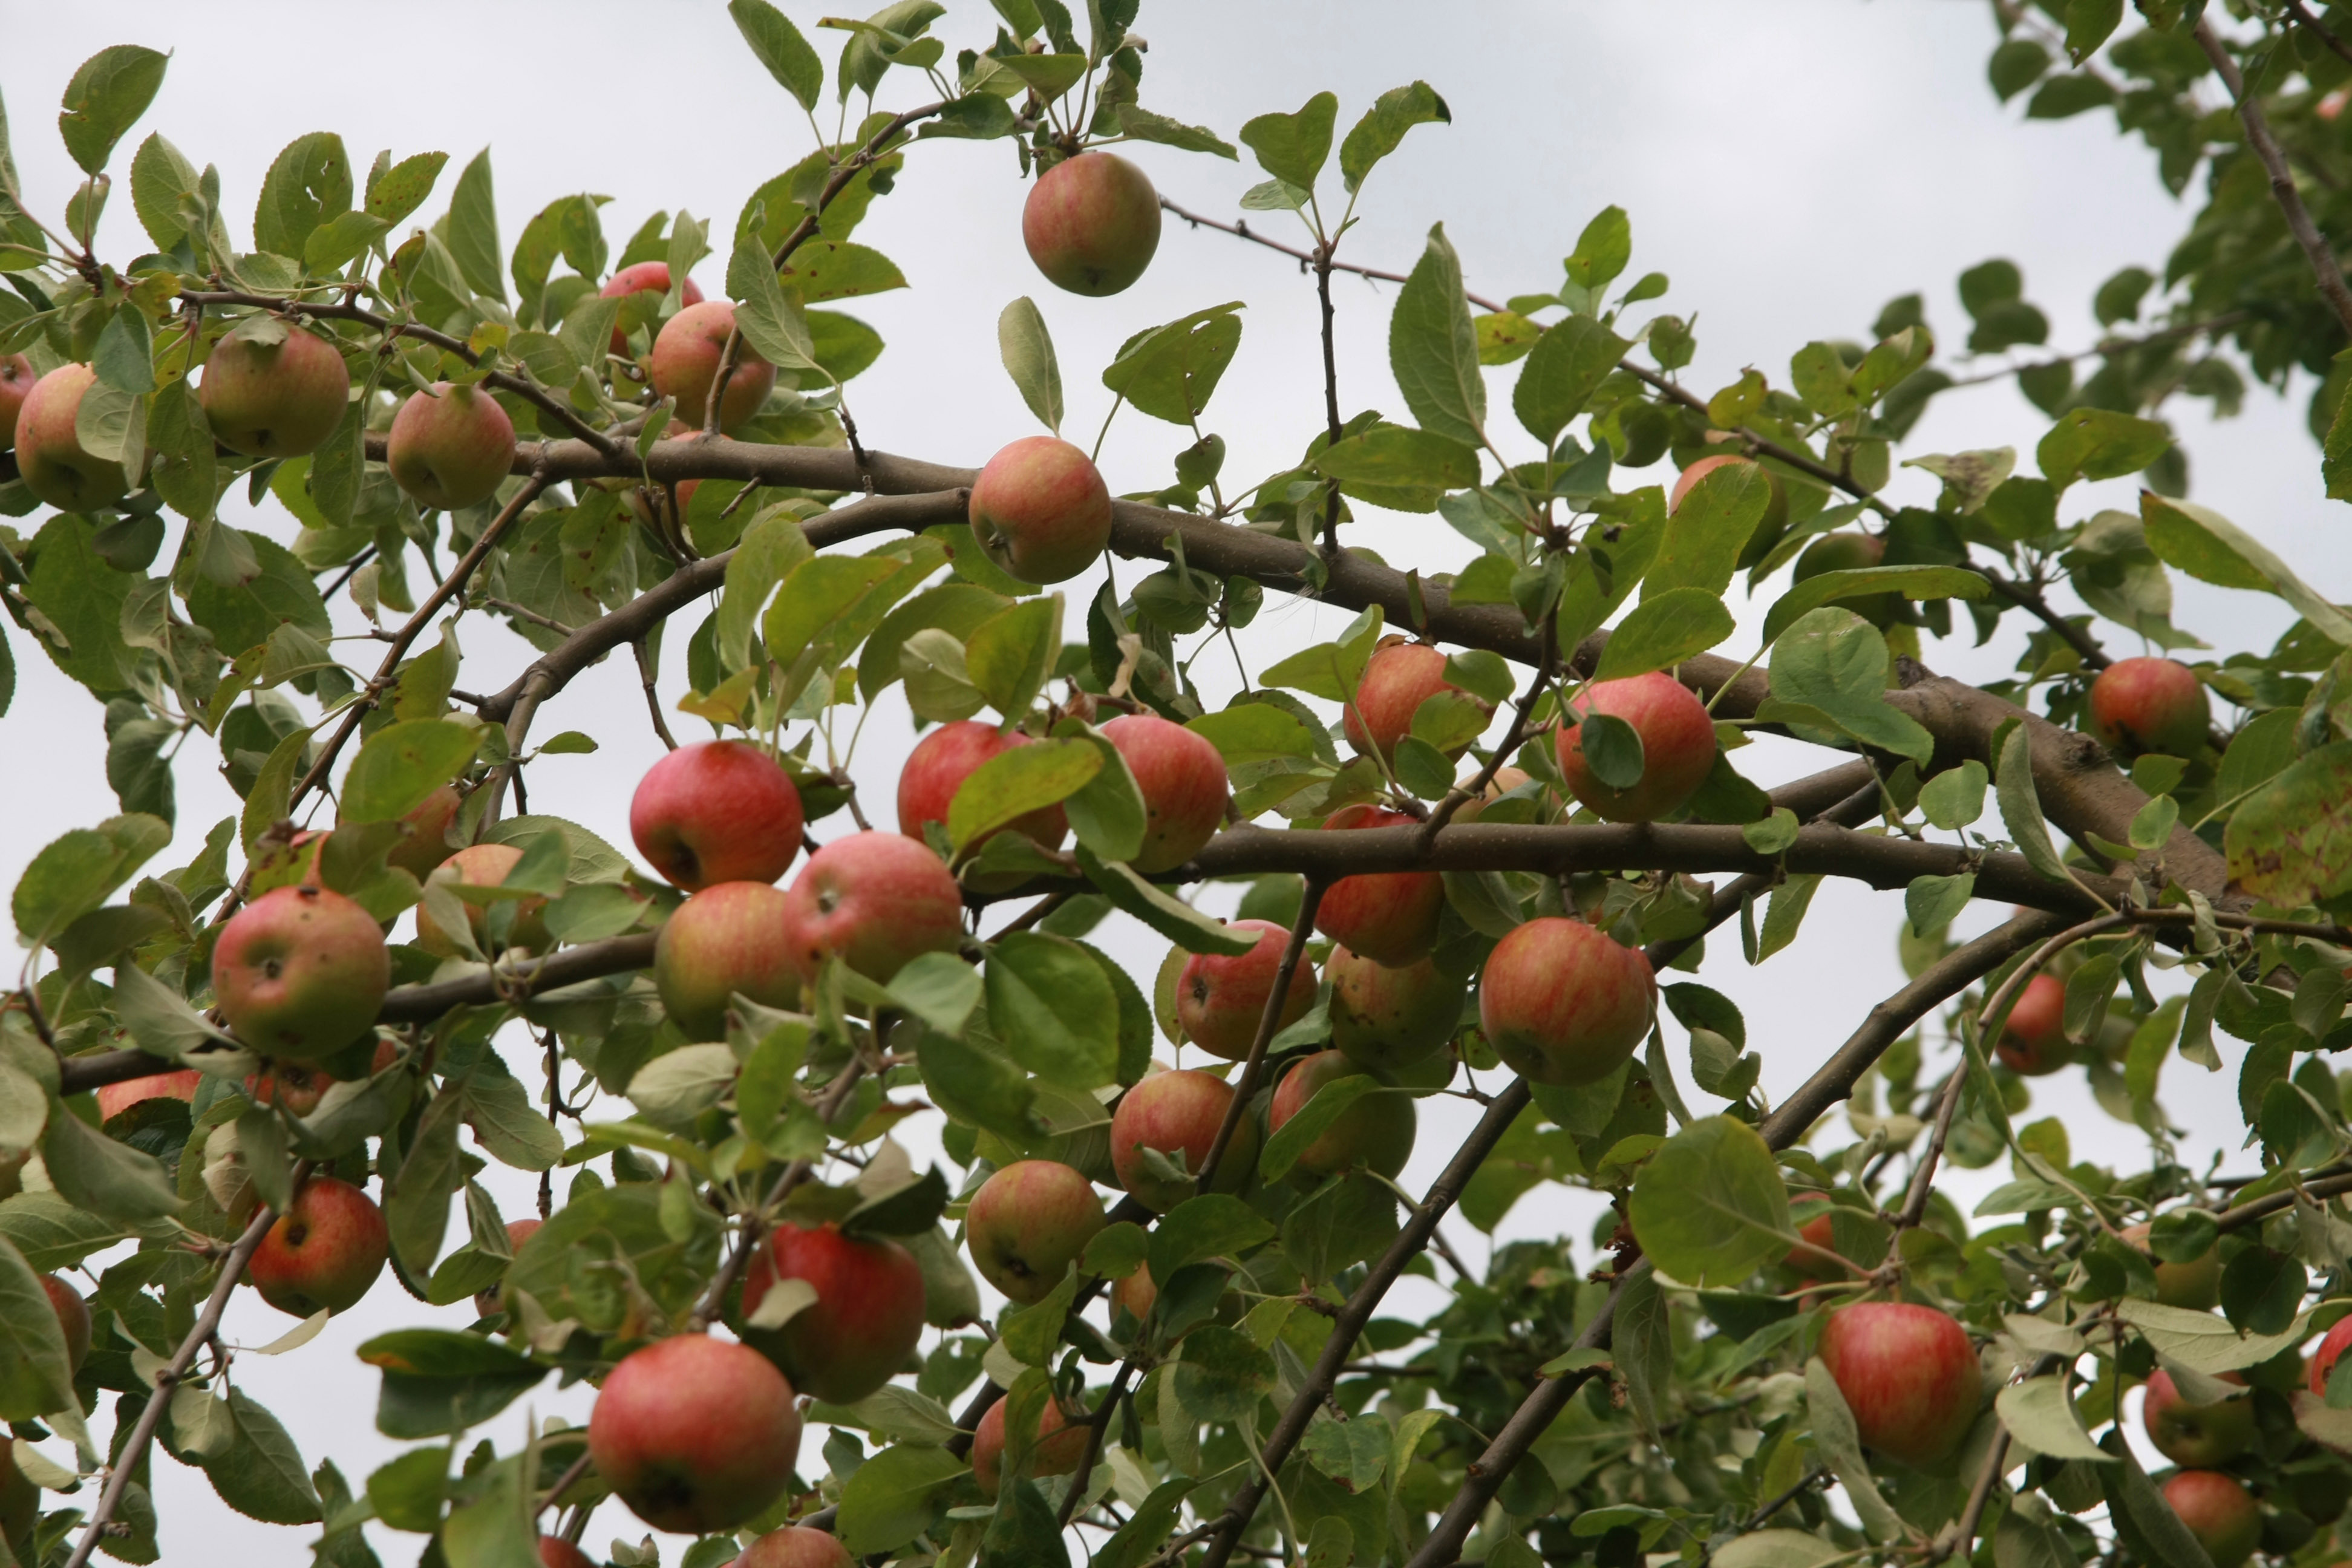 Obstvergabe von Äpfeln, Birnen und Walnüssen